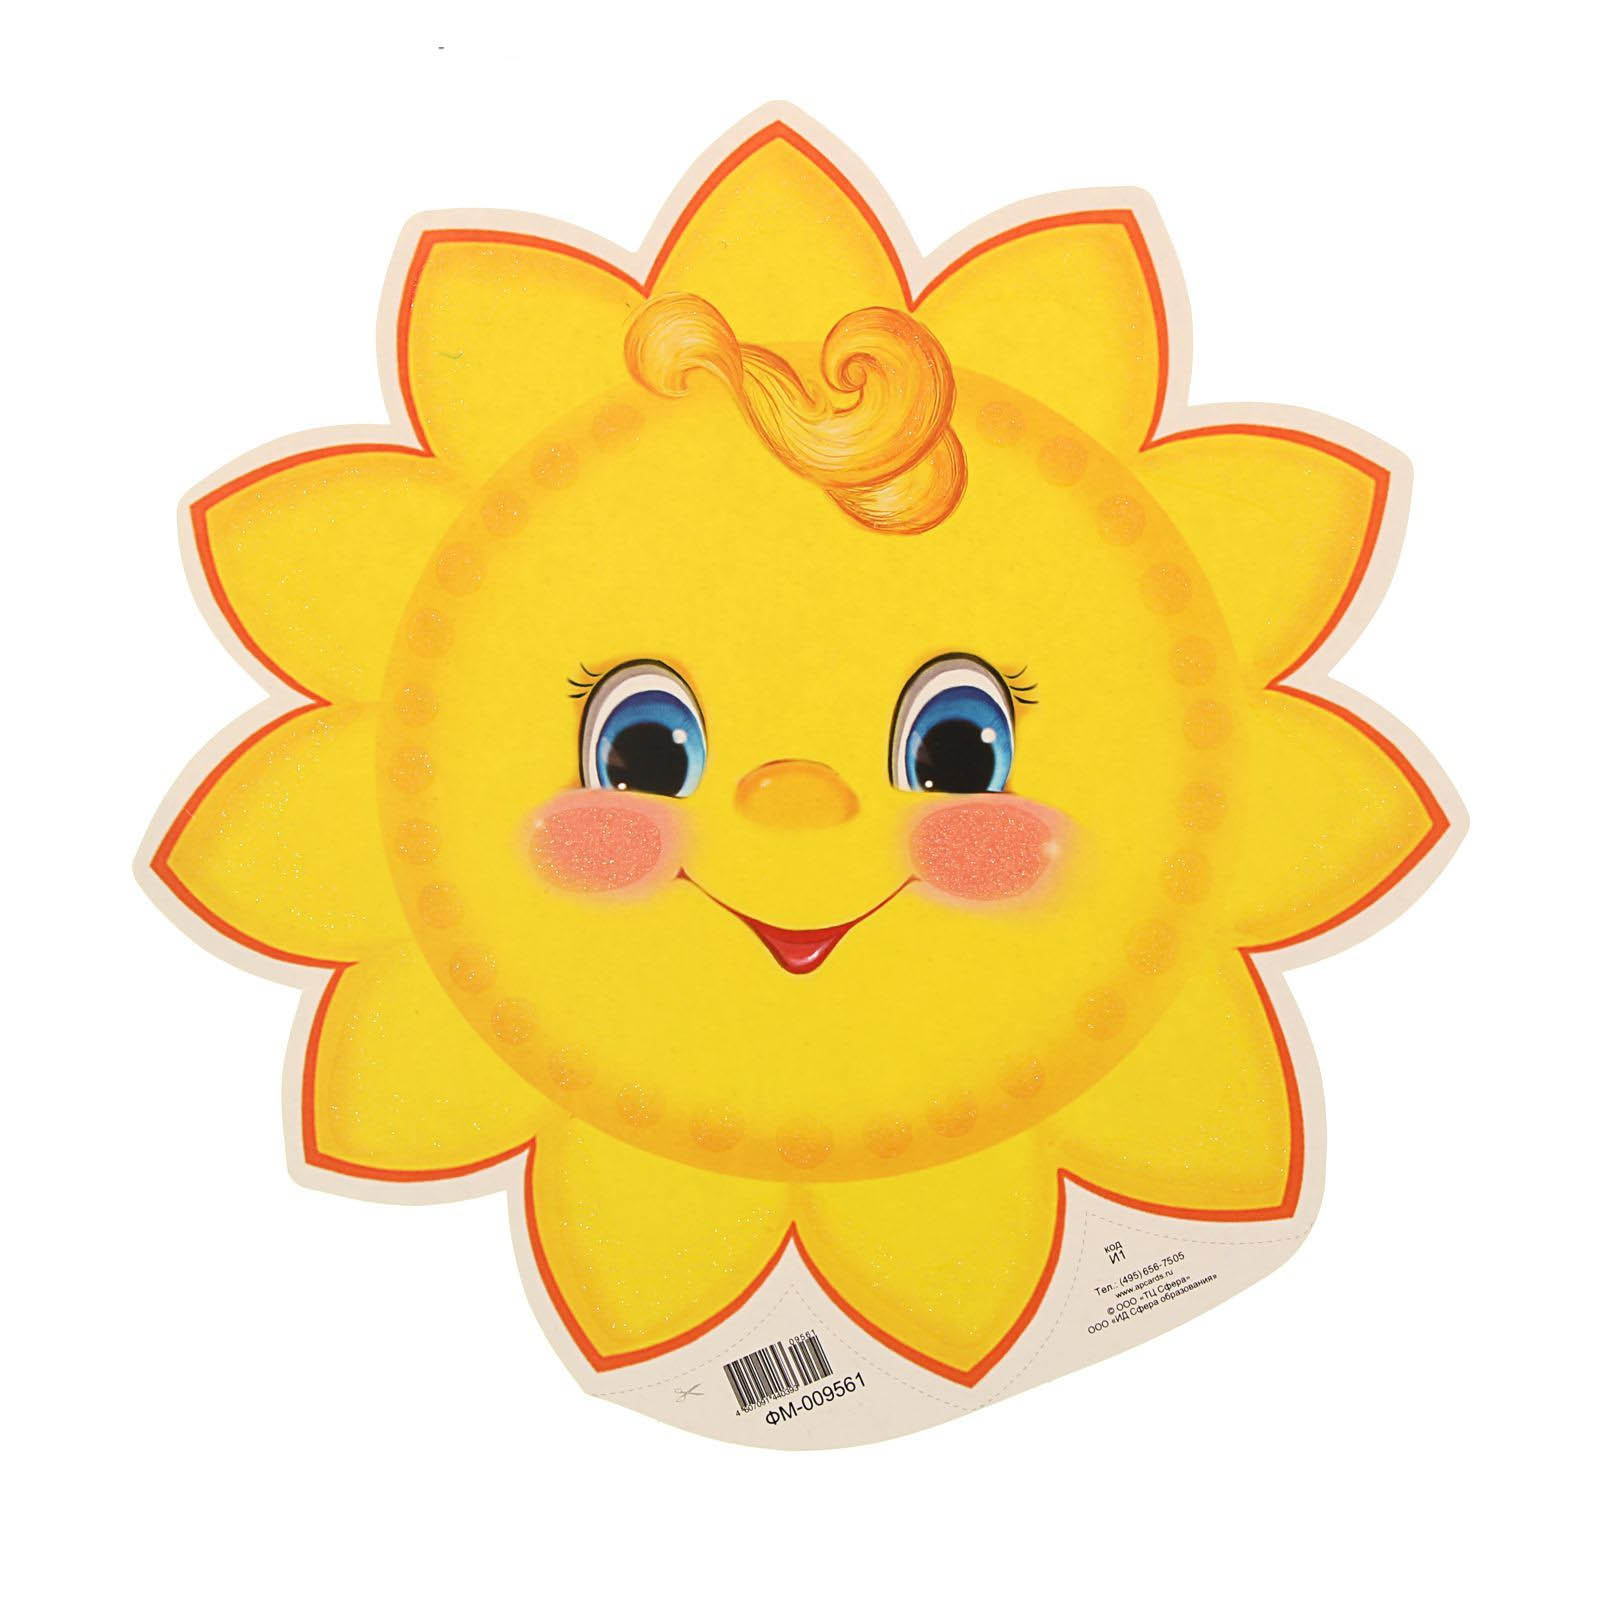 Изображение солнышка для детского сада